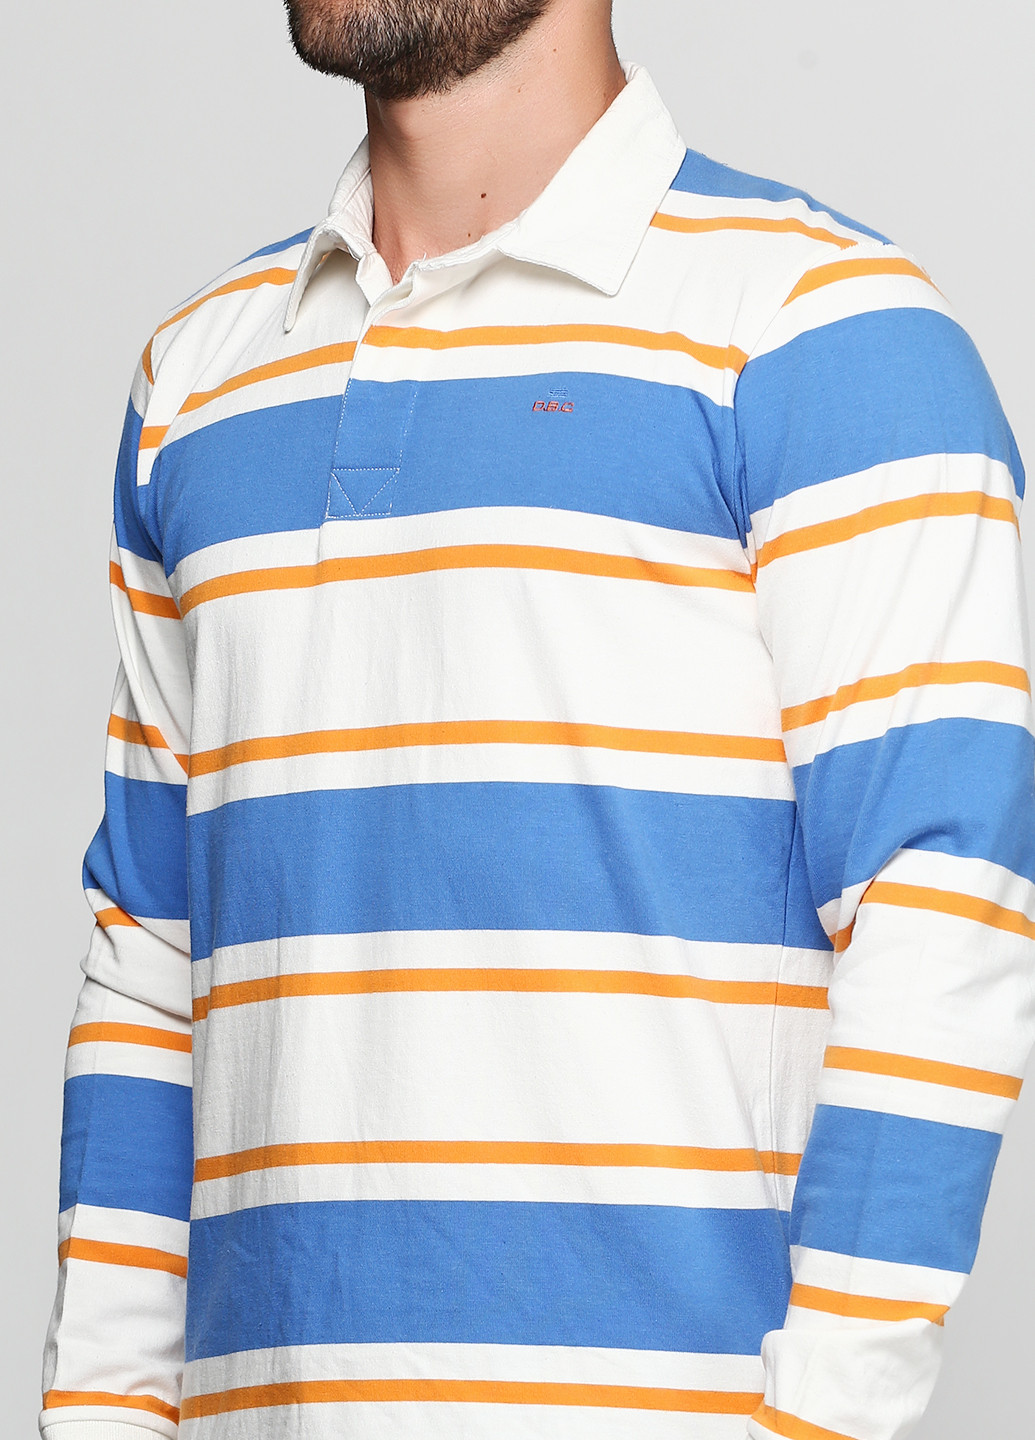 Цветная футболка-поло для мужчин D.B.C в полоску